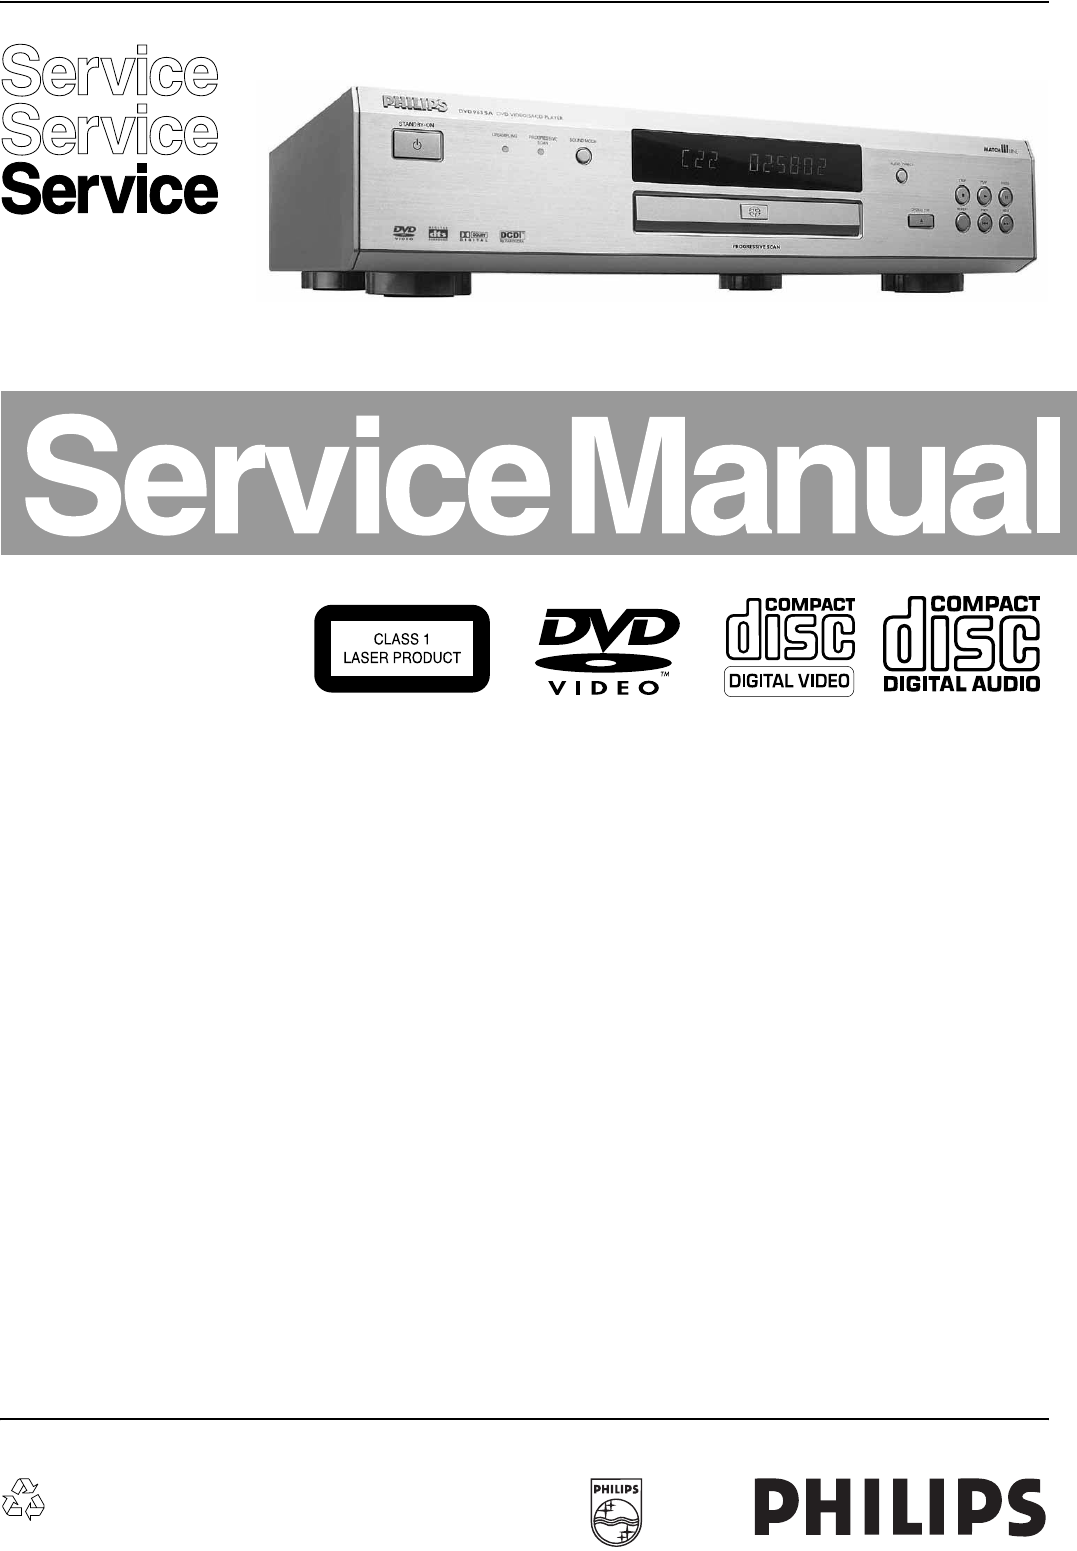 Philips Dvd Player Dvd963sa Users Manual